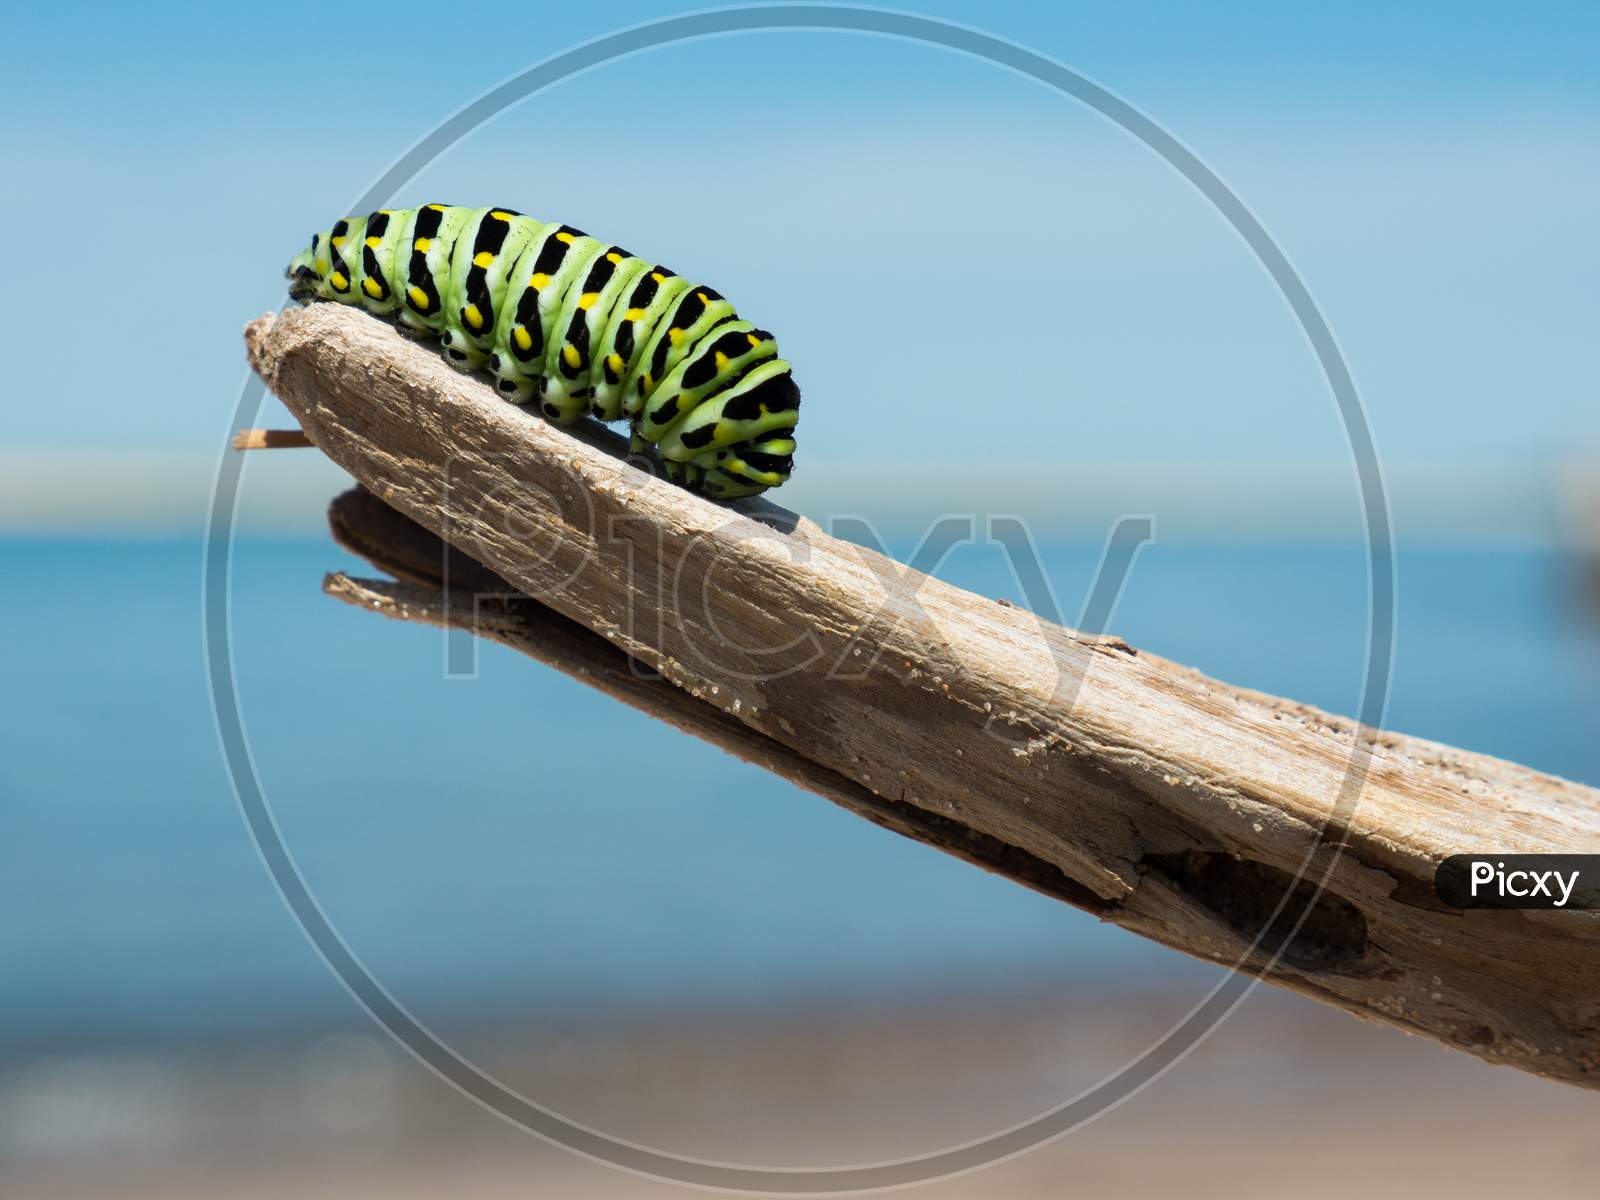 Caterpillar on a wooden branch